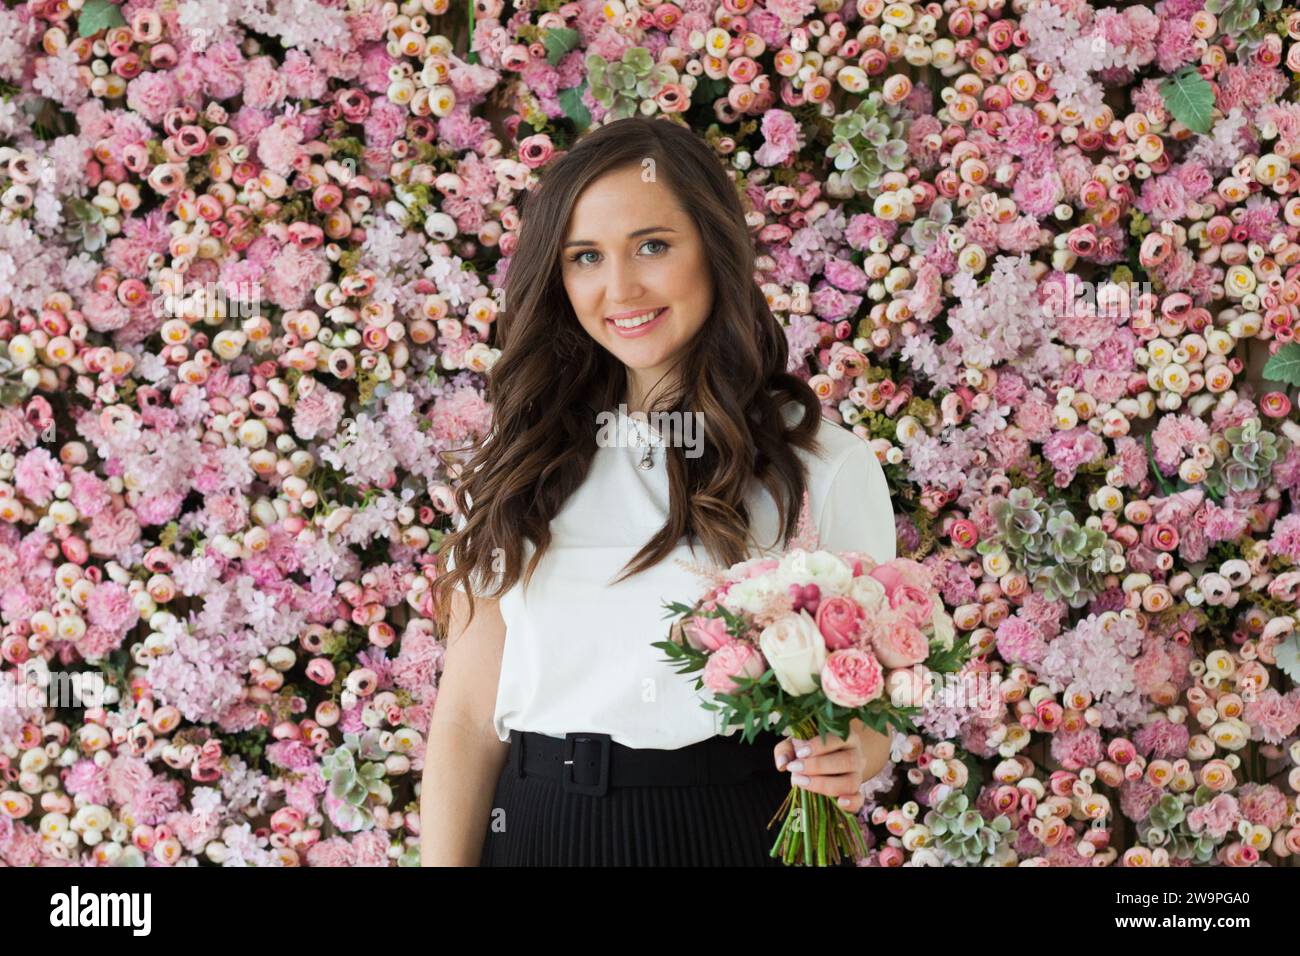 Attraktive glückliche brünette Frau mit niedlichem Lächeln, die Blumengeschenk hält und auf rosa floralem Hintergrund posiert. Blooming, Liebe, Geburtstag am 8. märz Stockfoto